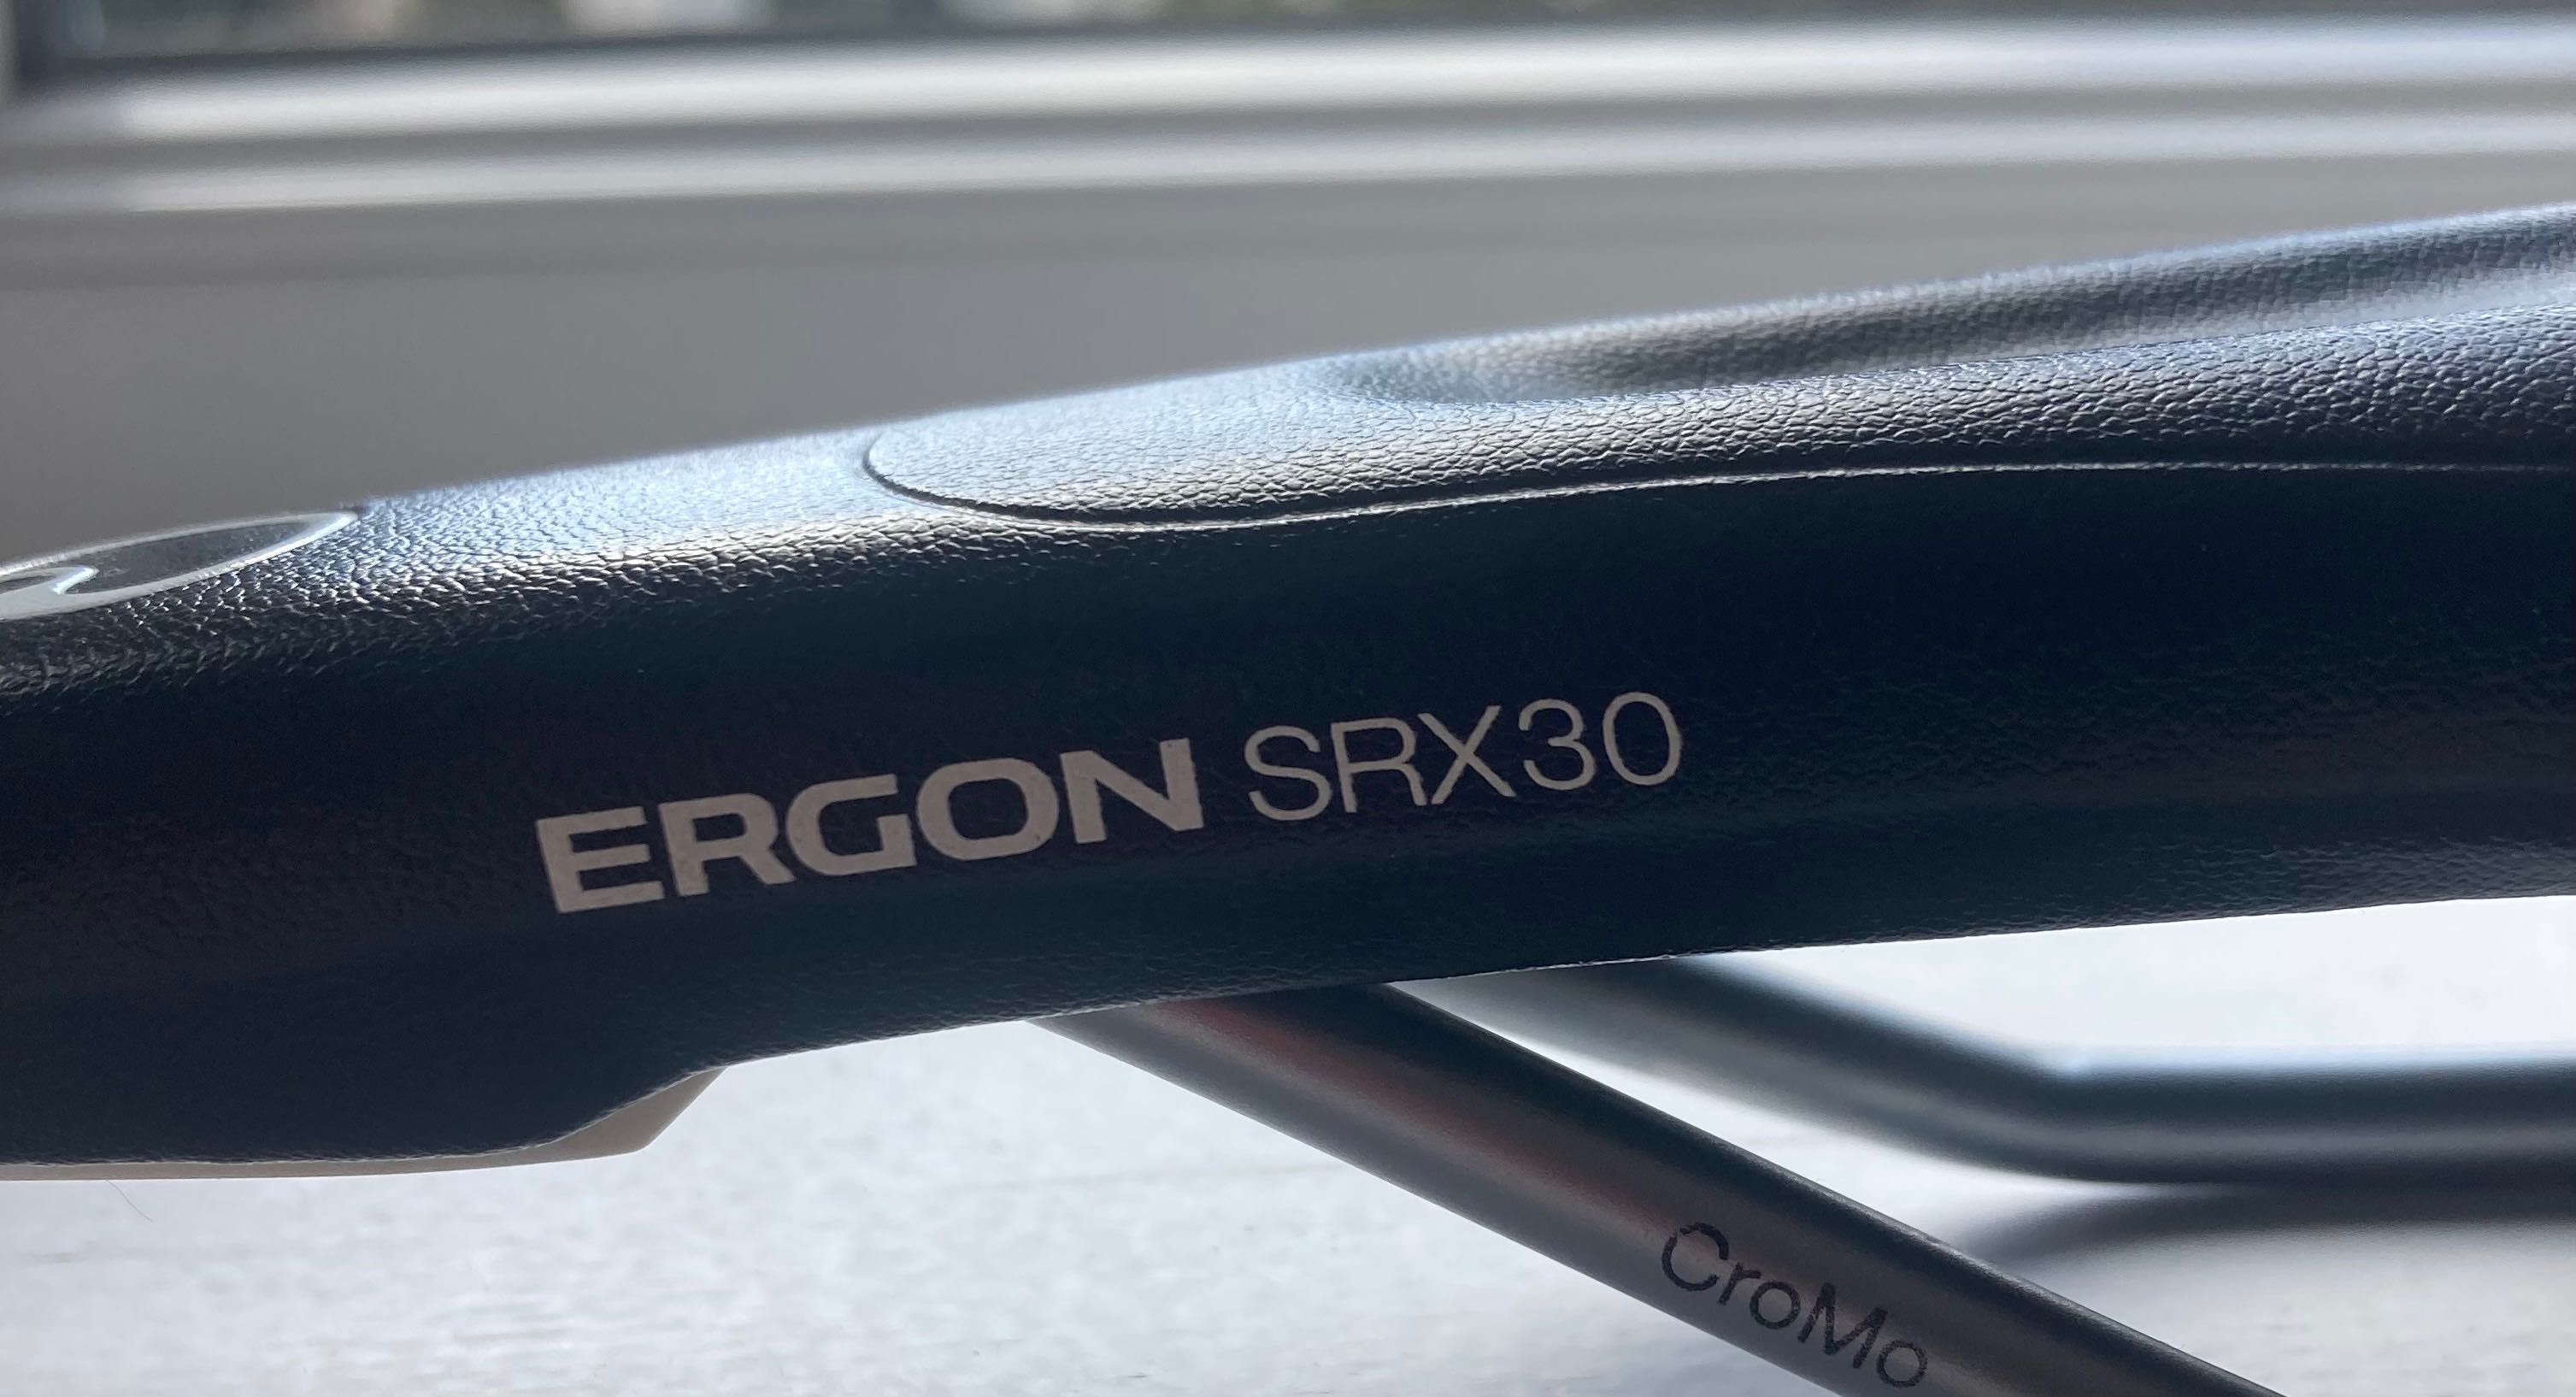 Siodełko rowerowe Ergon srx30